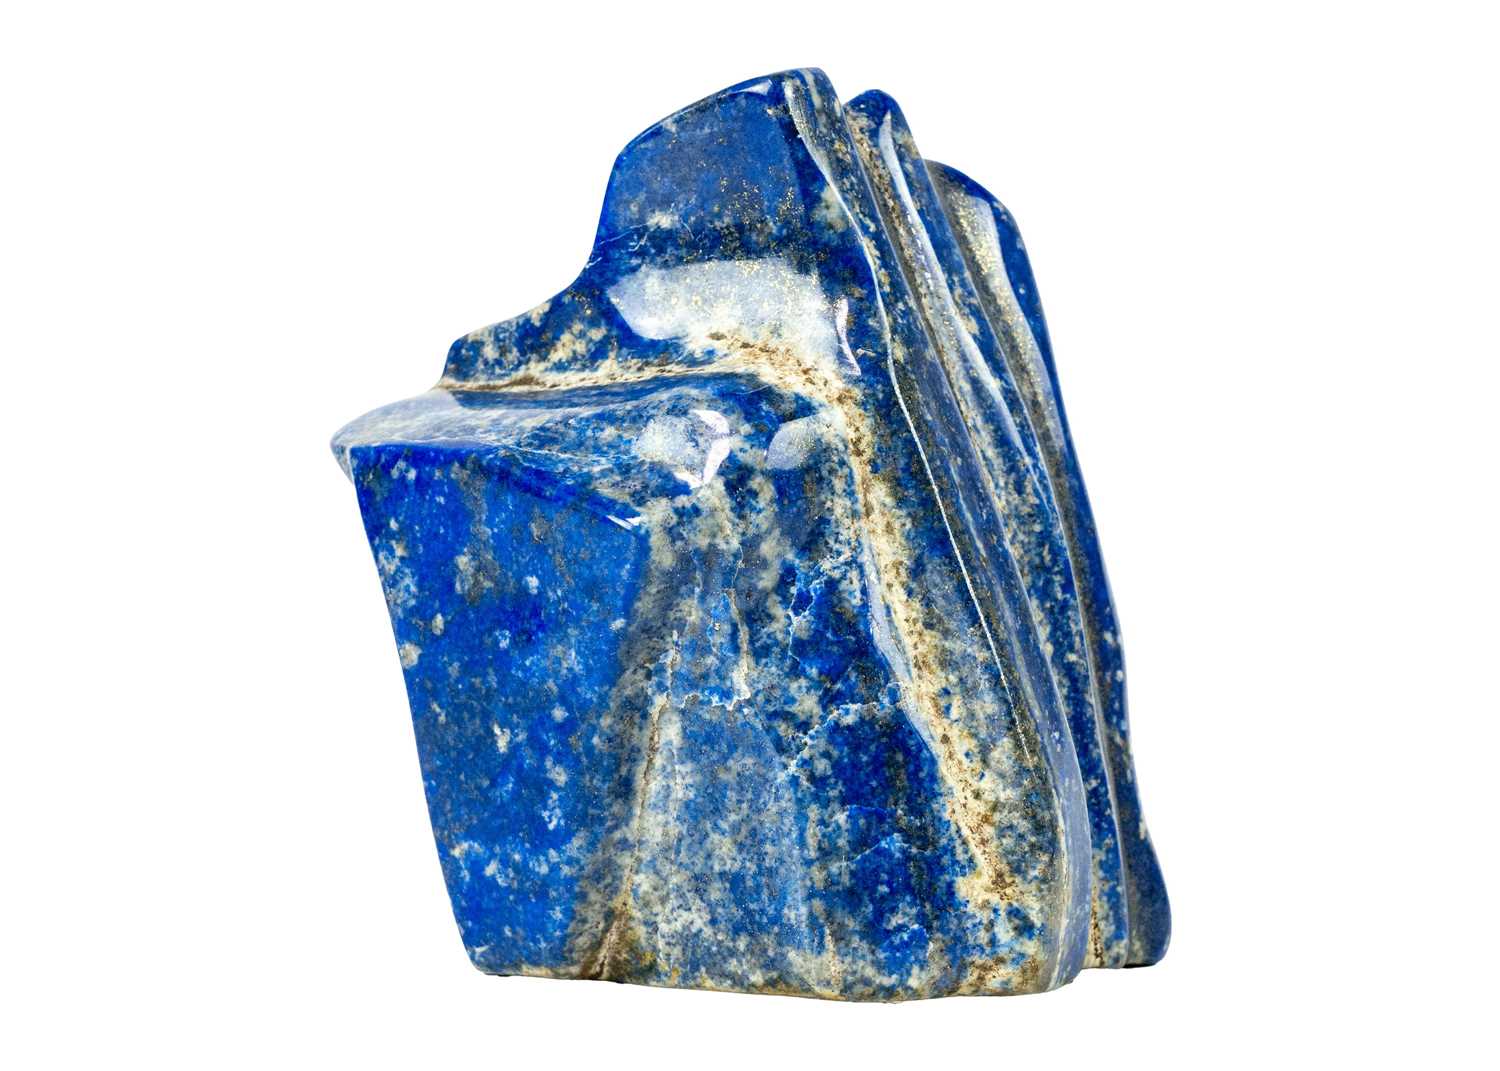 A large lapis lazuli mineral specimen.